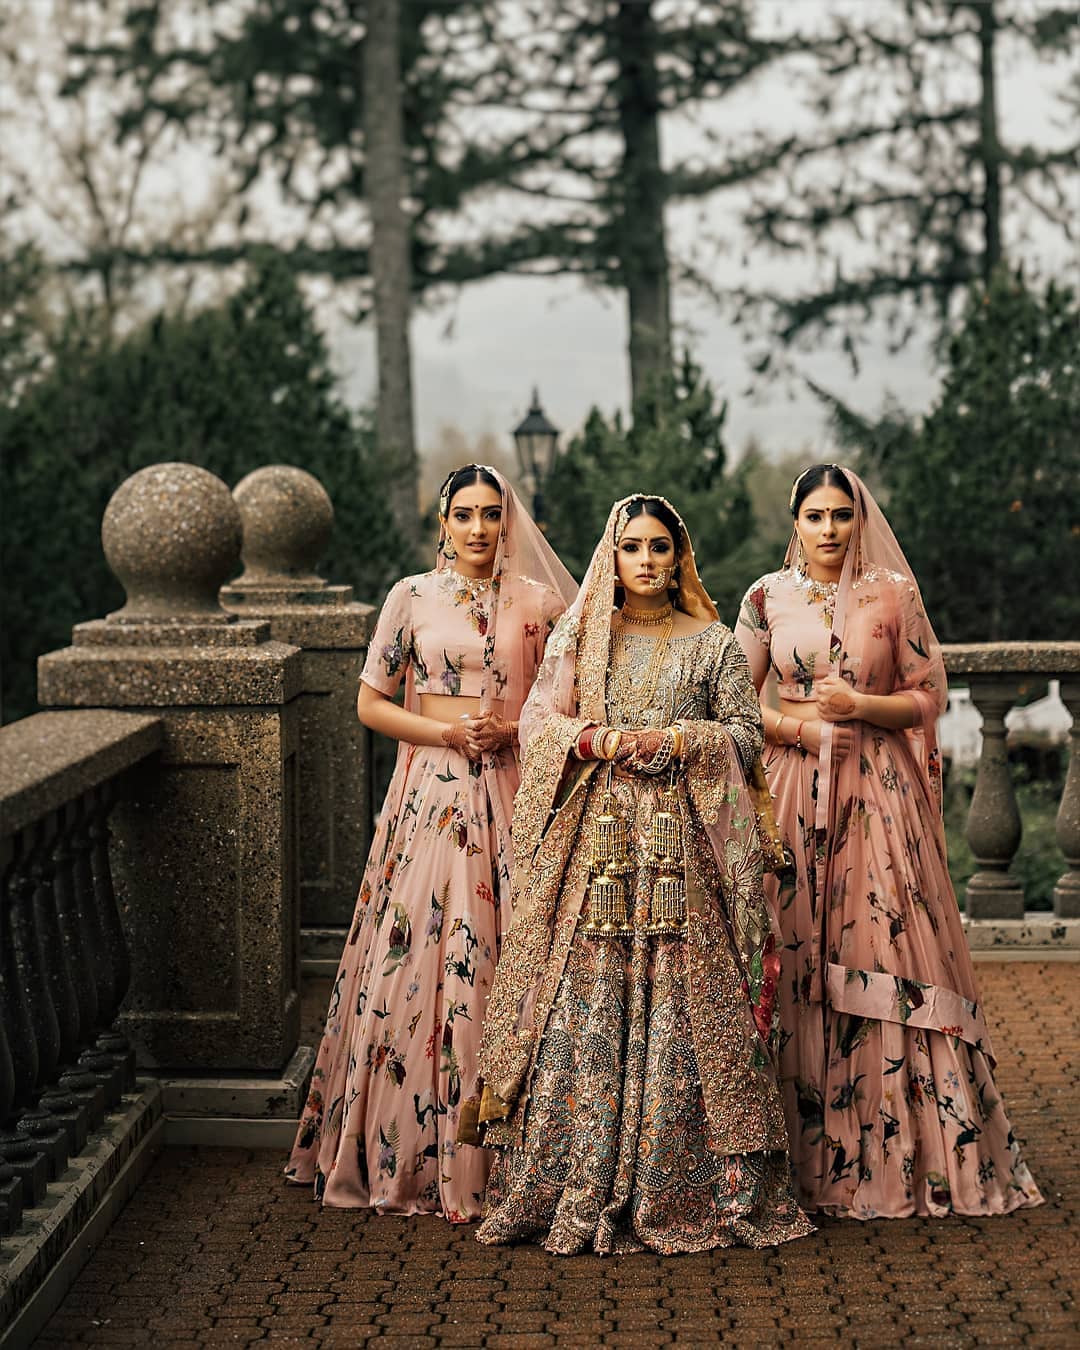 Pin on Indian Wedding Photos